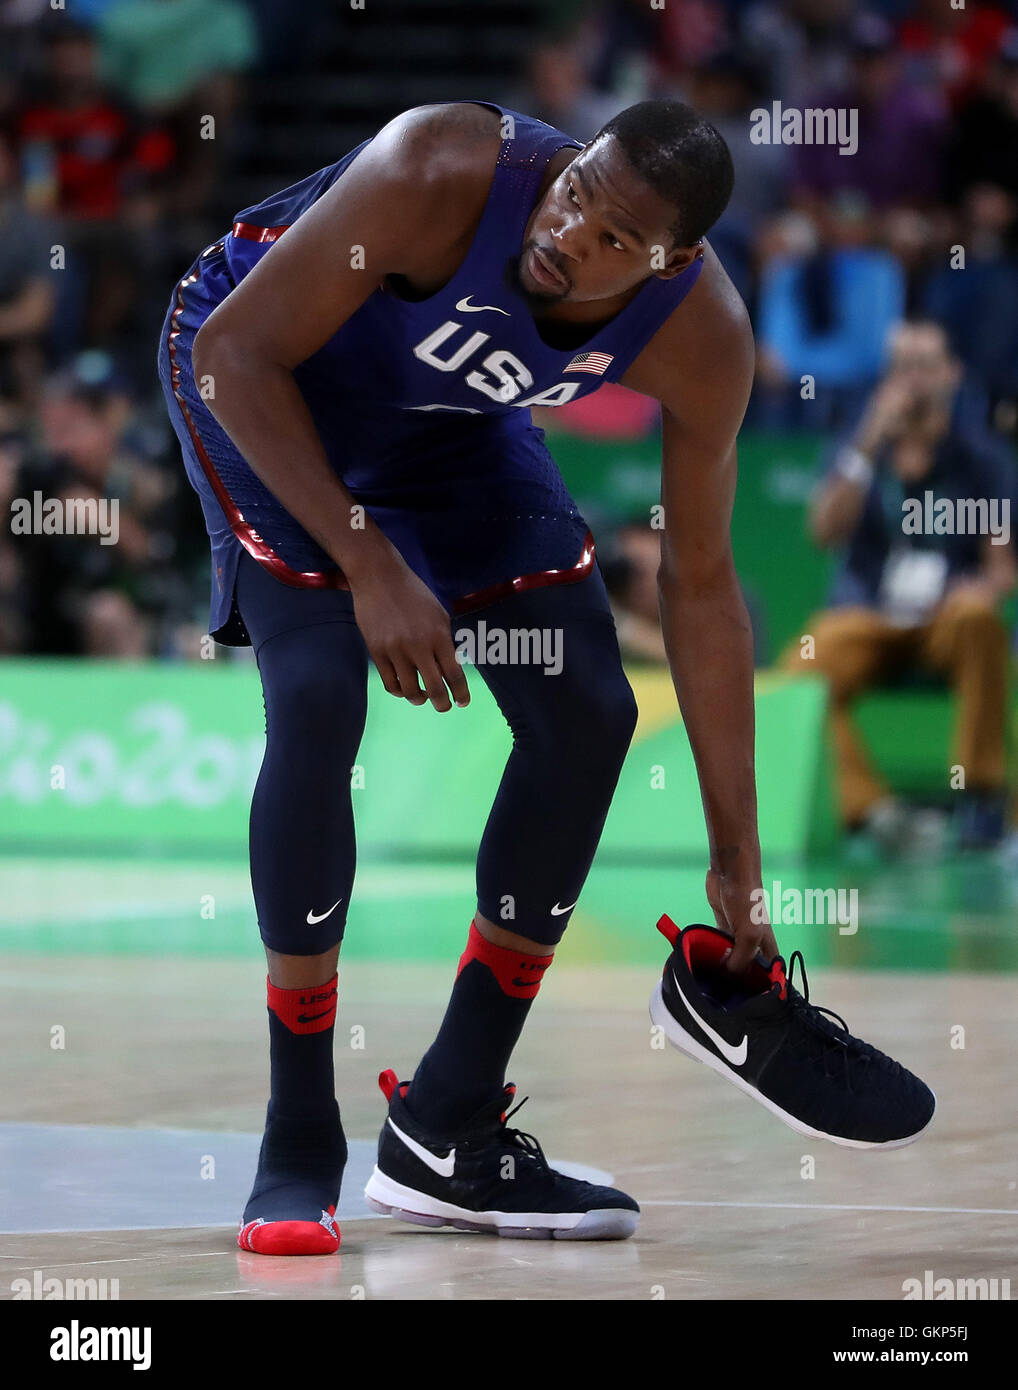 RIO DE JANEIRO, RJ - 21.08.2016: Rio 2016 - baloncesto Kevin Durant (USA)  pierde el tenis durante la disputa de la medalla de oro entre los Estados  Unidos y Serbia Baloncesto Juegos